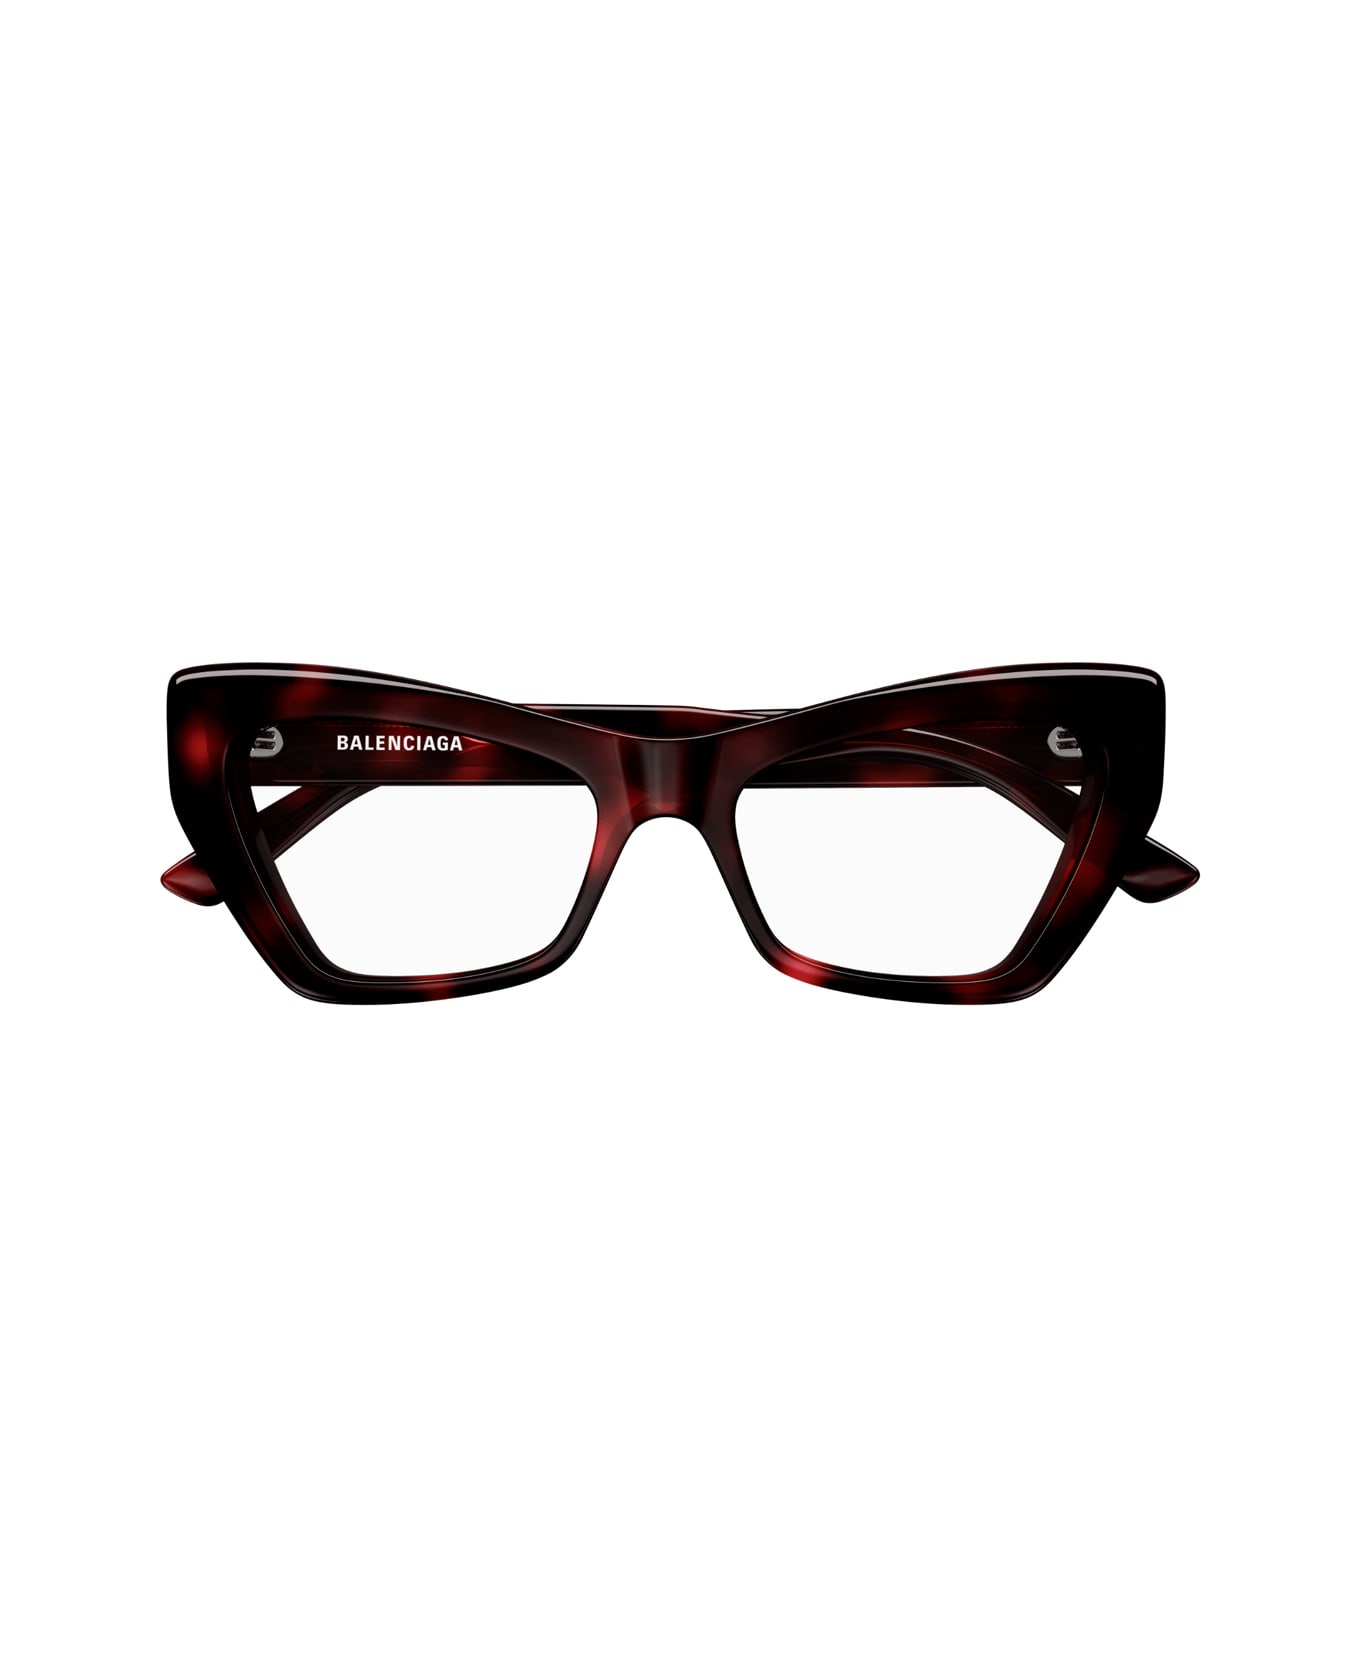 Balenciaga Eyewear Bb0296o 002 Glasses - Marrone